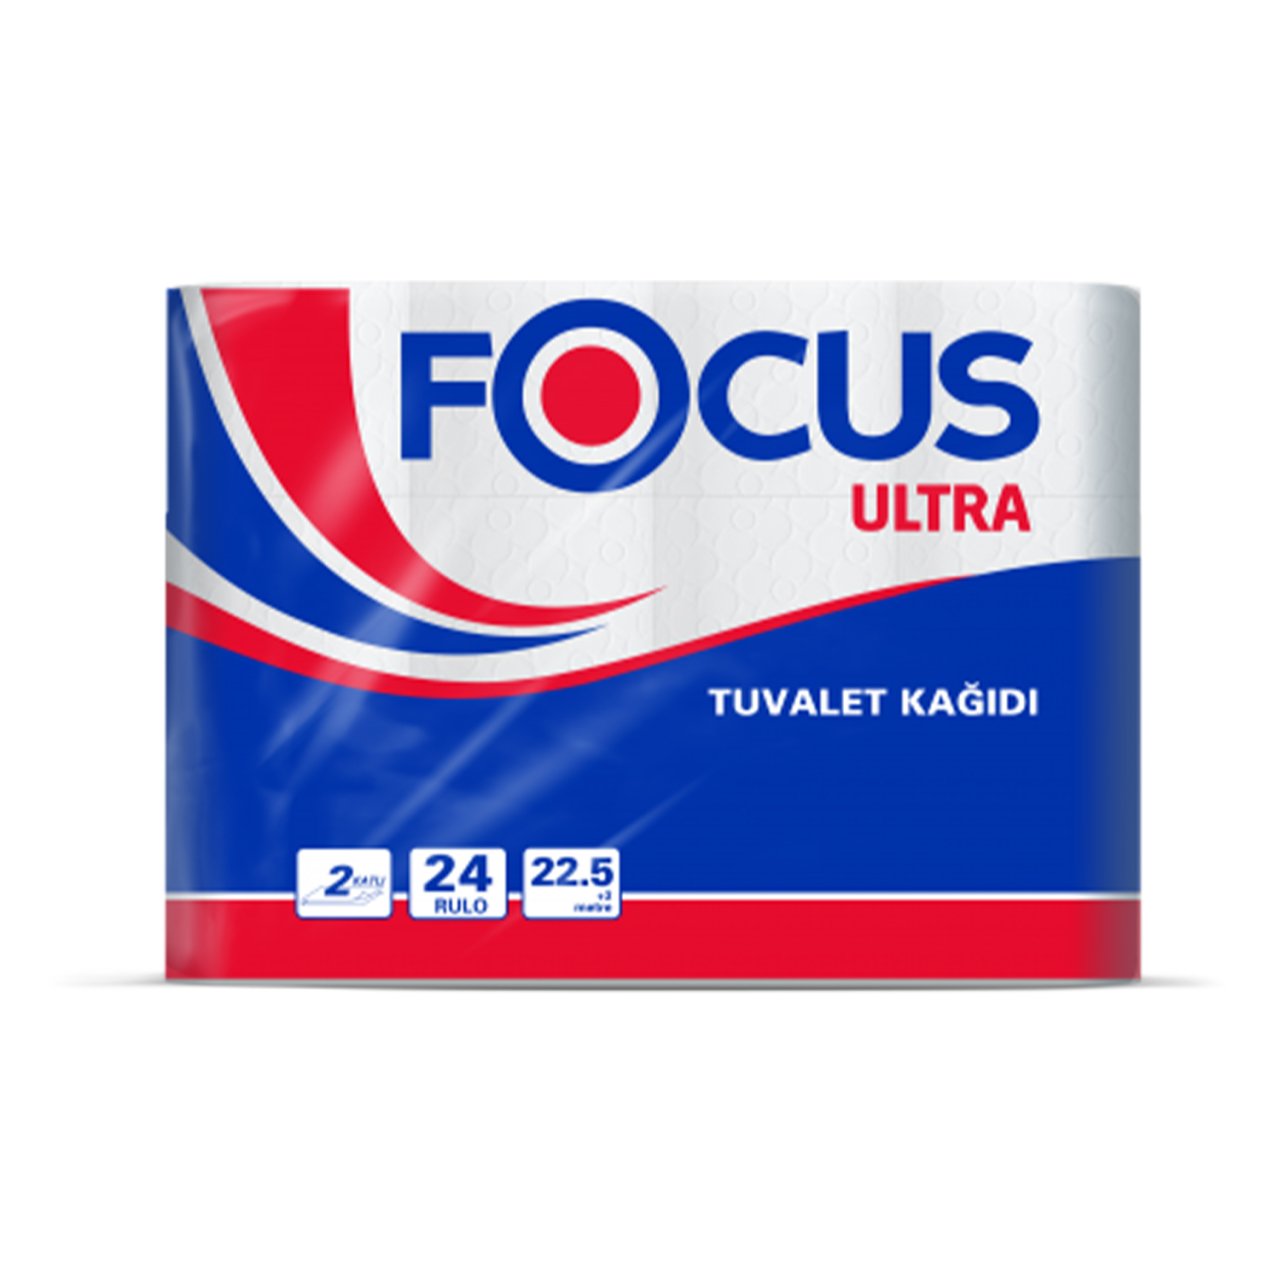 Focus Ultra Tuvalet Kağıdı 24'lü